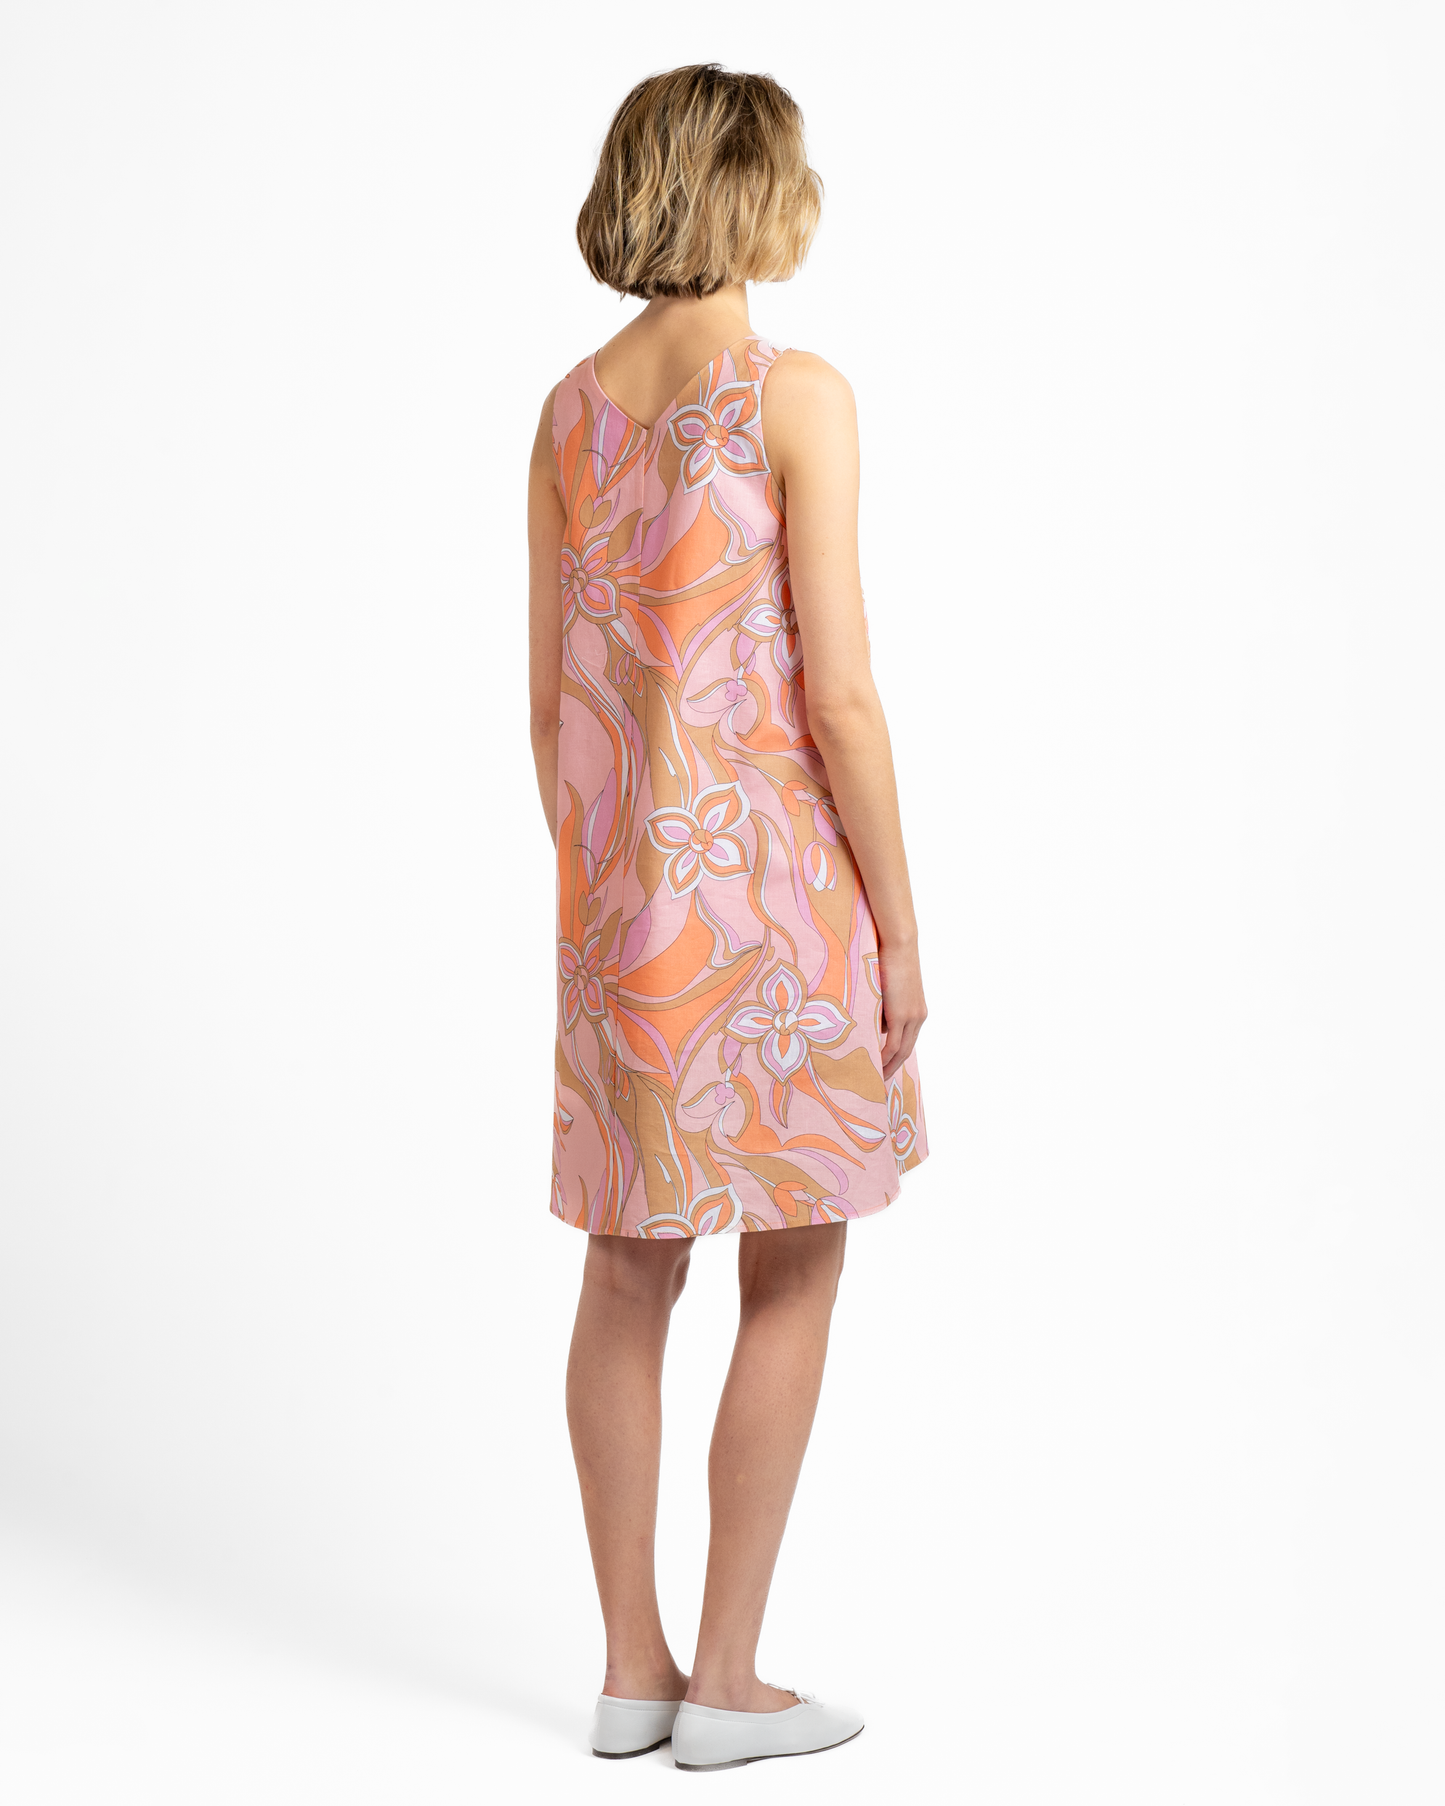 BYLYSE Linen Print Sleevelsss Dress